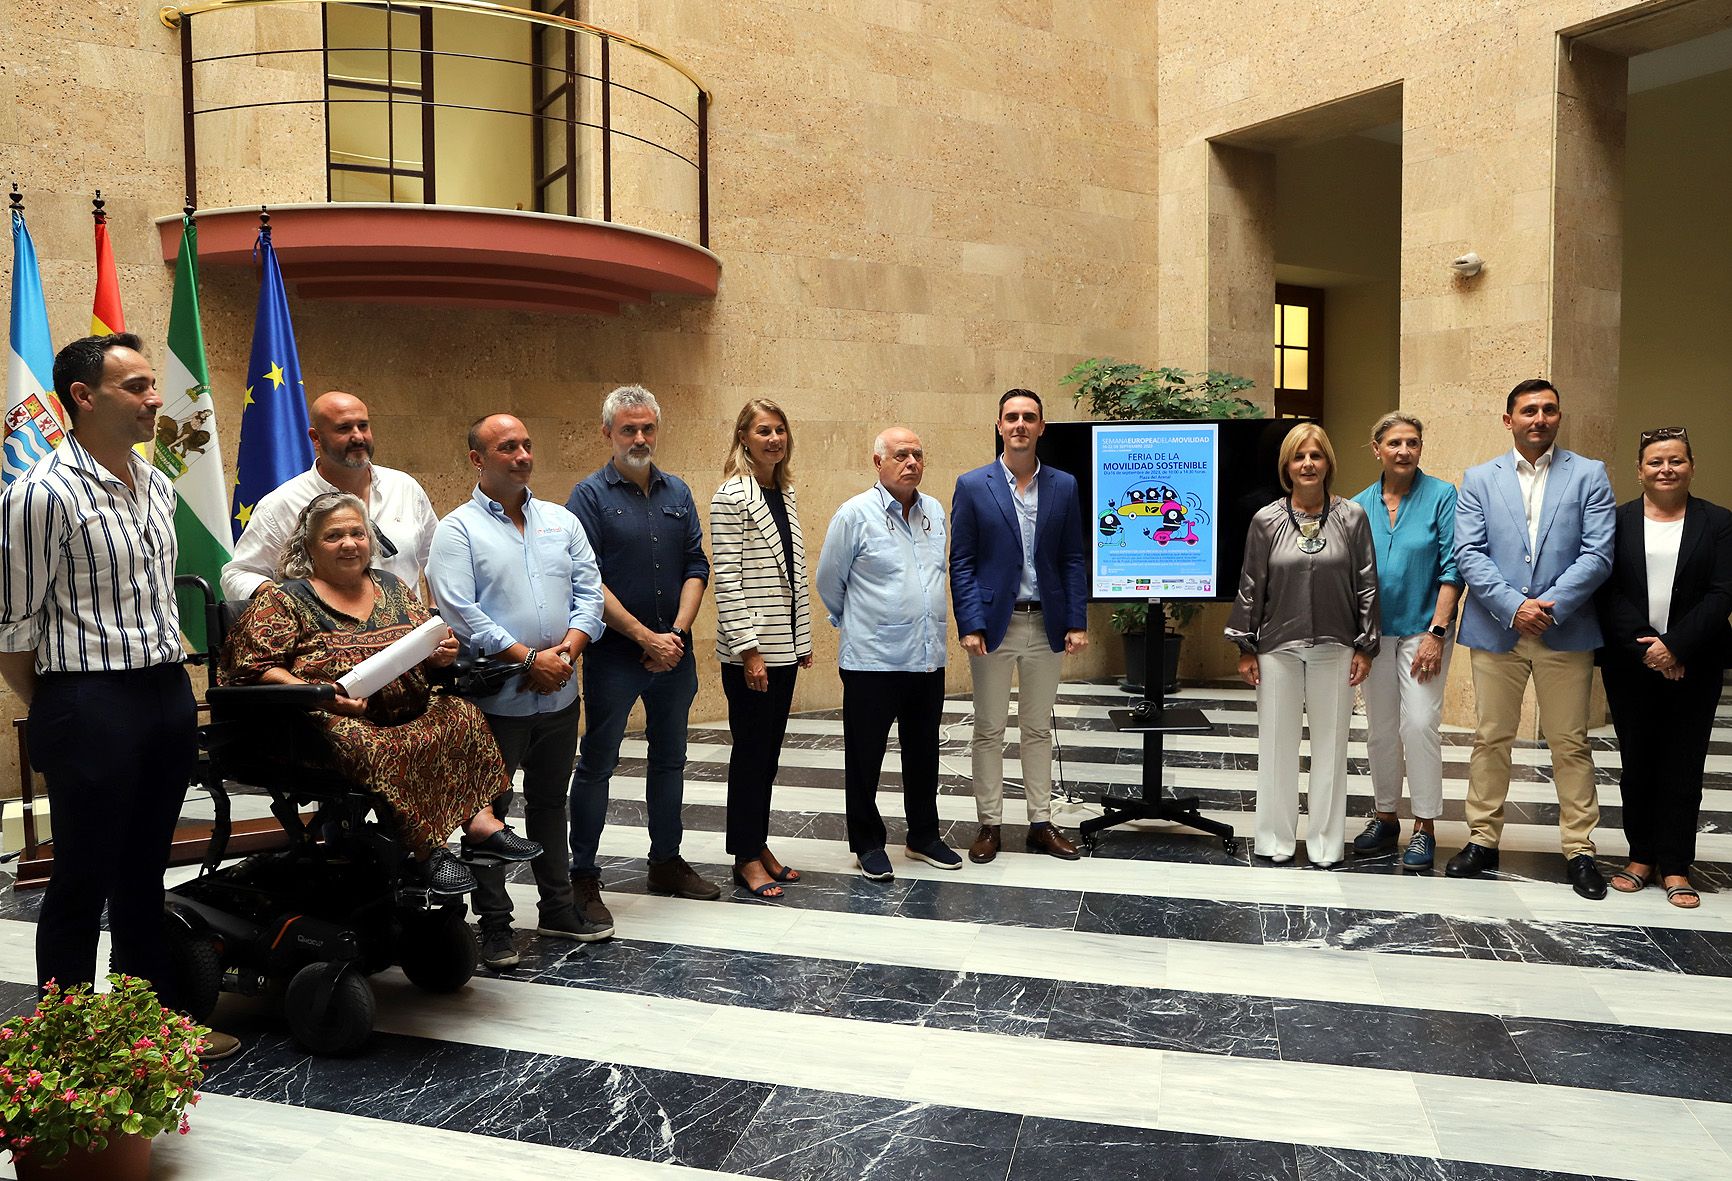 Miembros del gobierno y entidades participantes tras la presentación de la Semana Europea de la Movilidad.